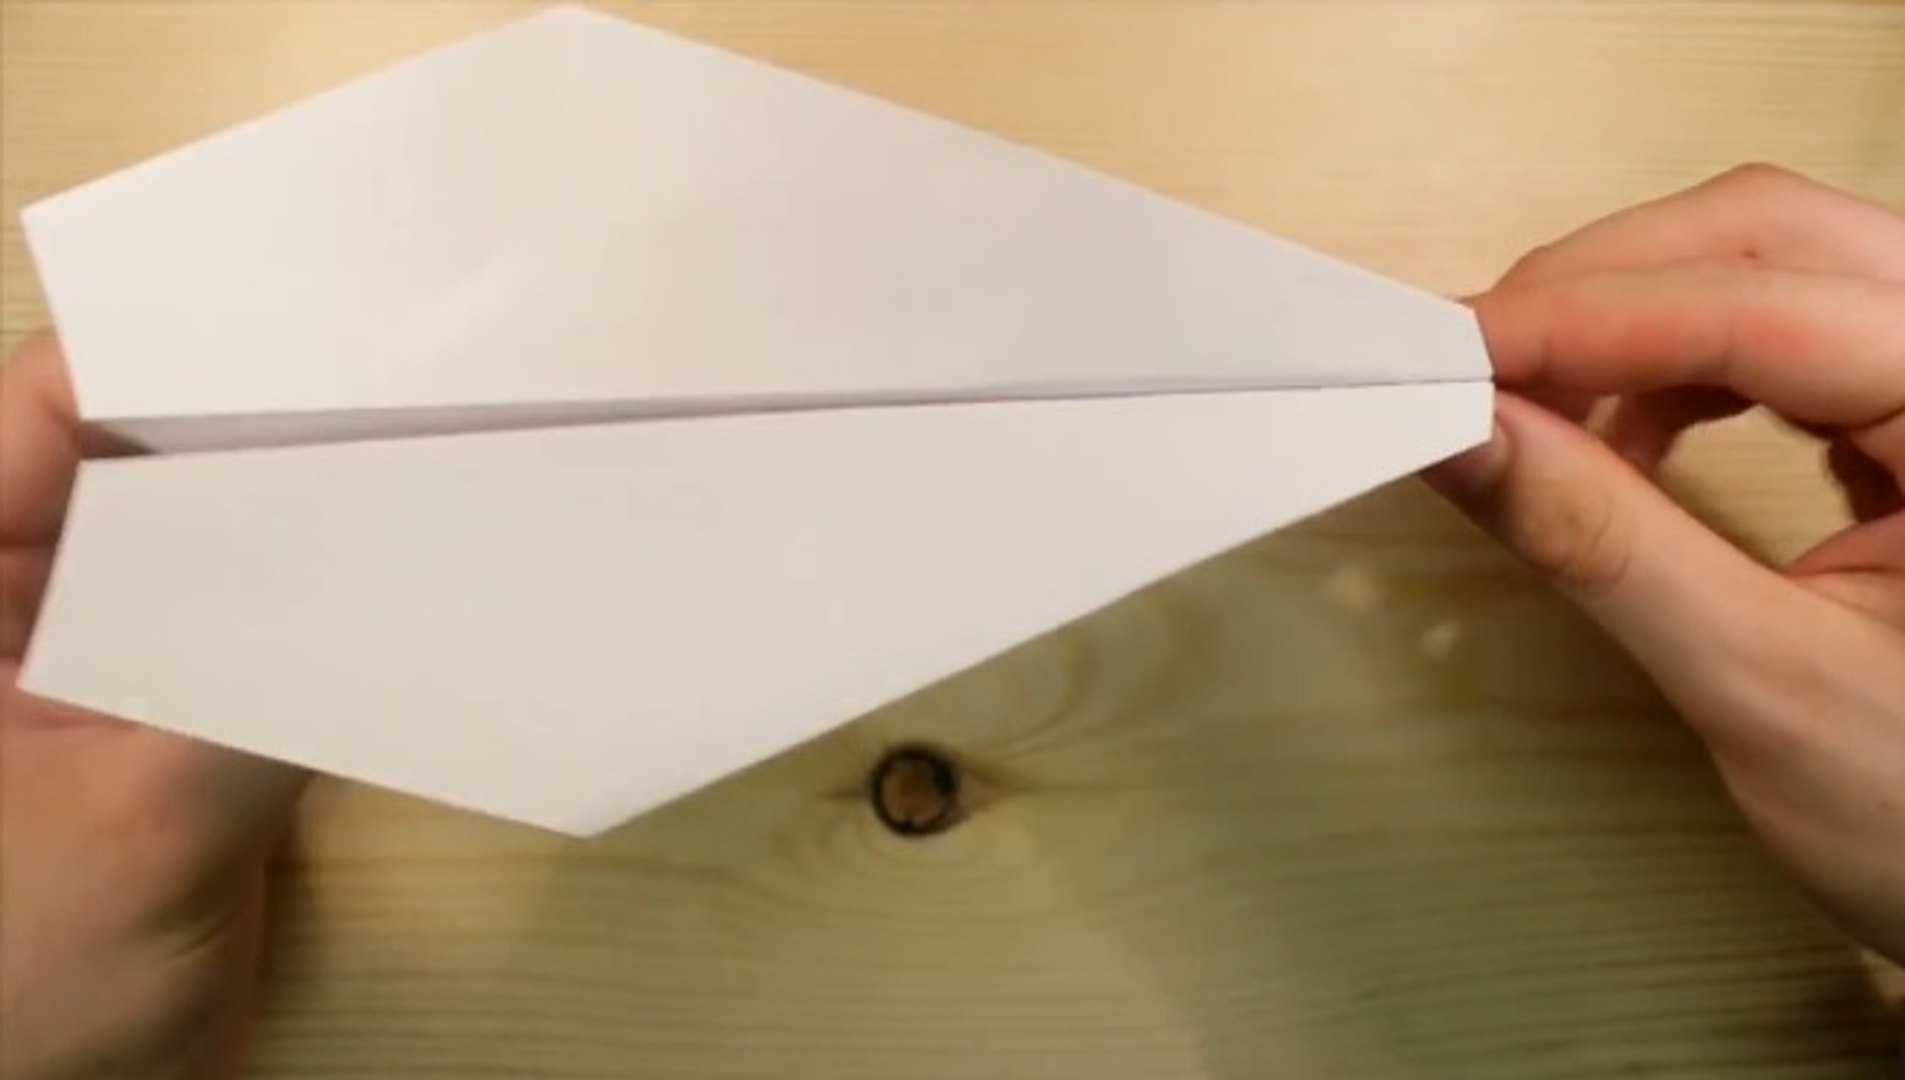 Kağıttan Uçak Nasıl Yapılır? - Dailymotion Video